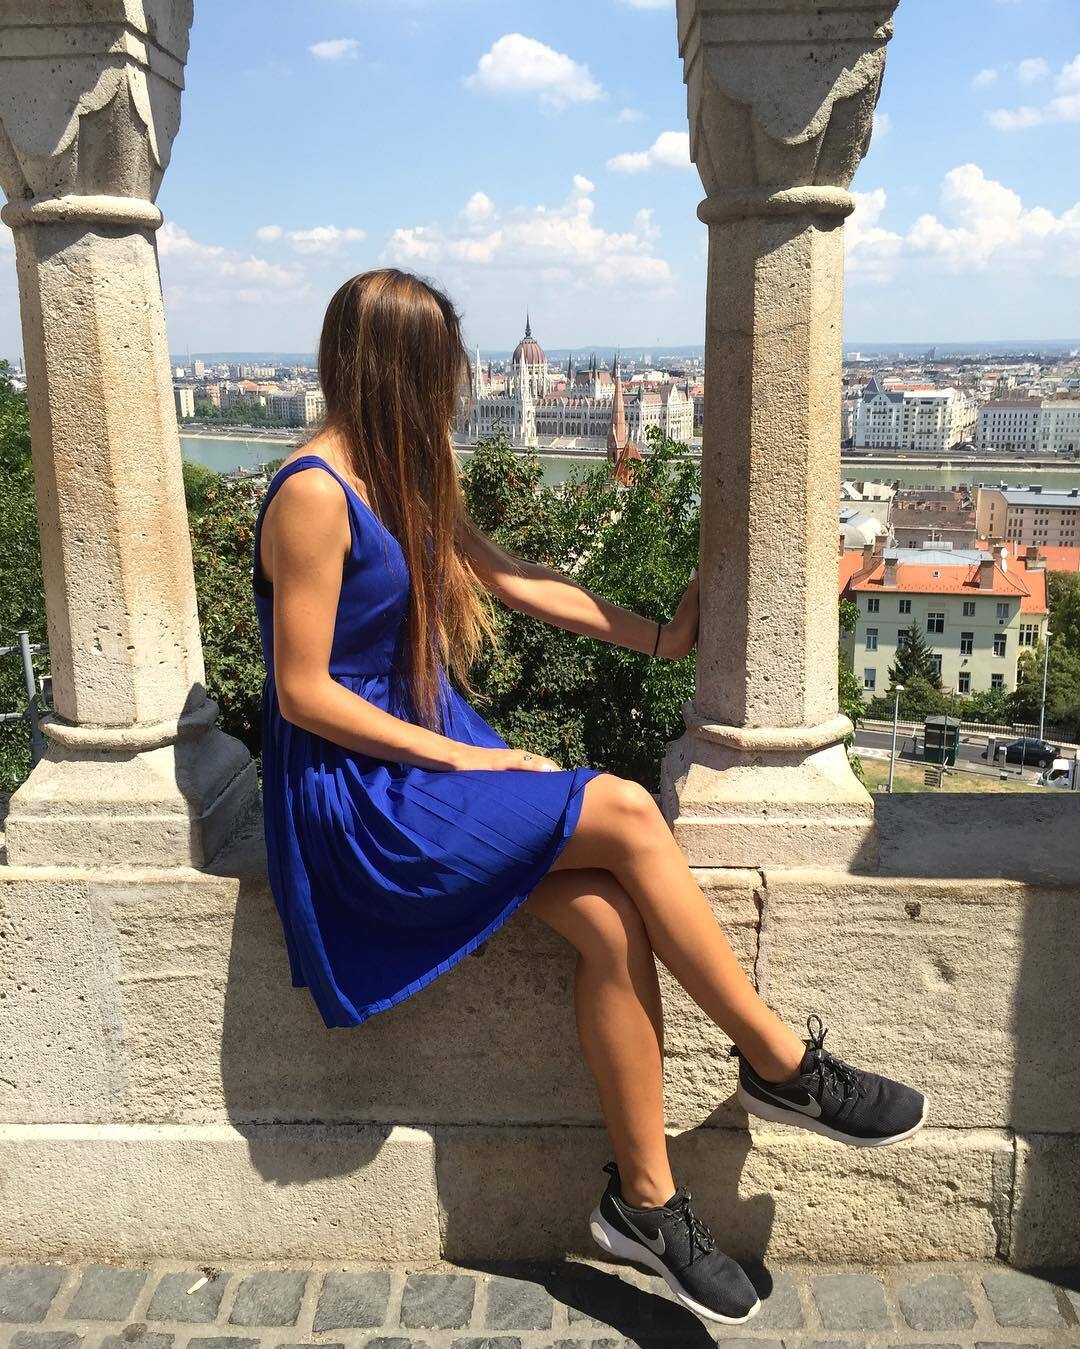 Двадцатилетняя девушка-арбитр из Польши взбудоражила сеть своей внешностью: фотофакт